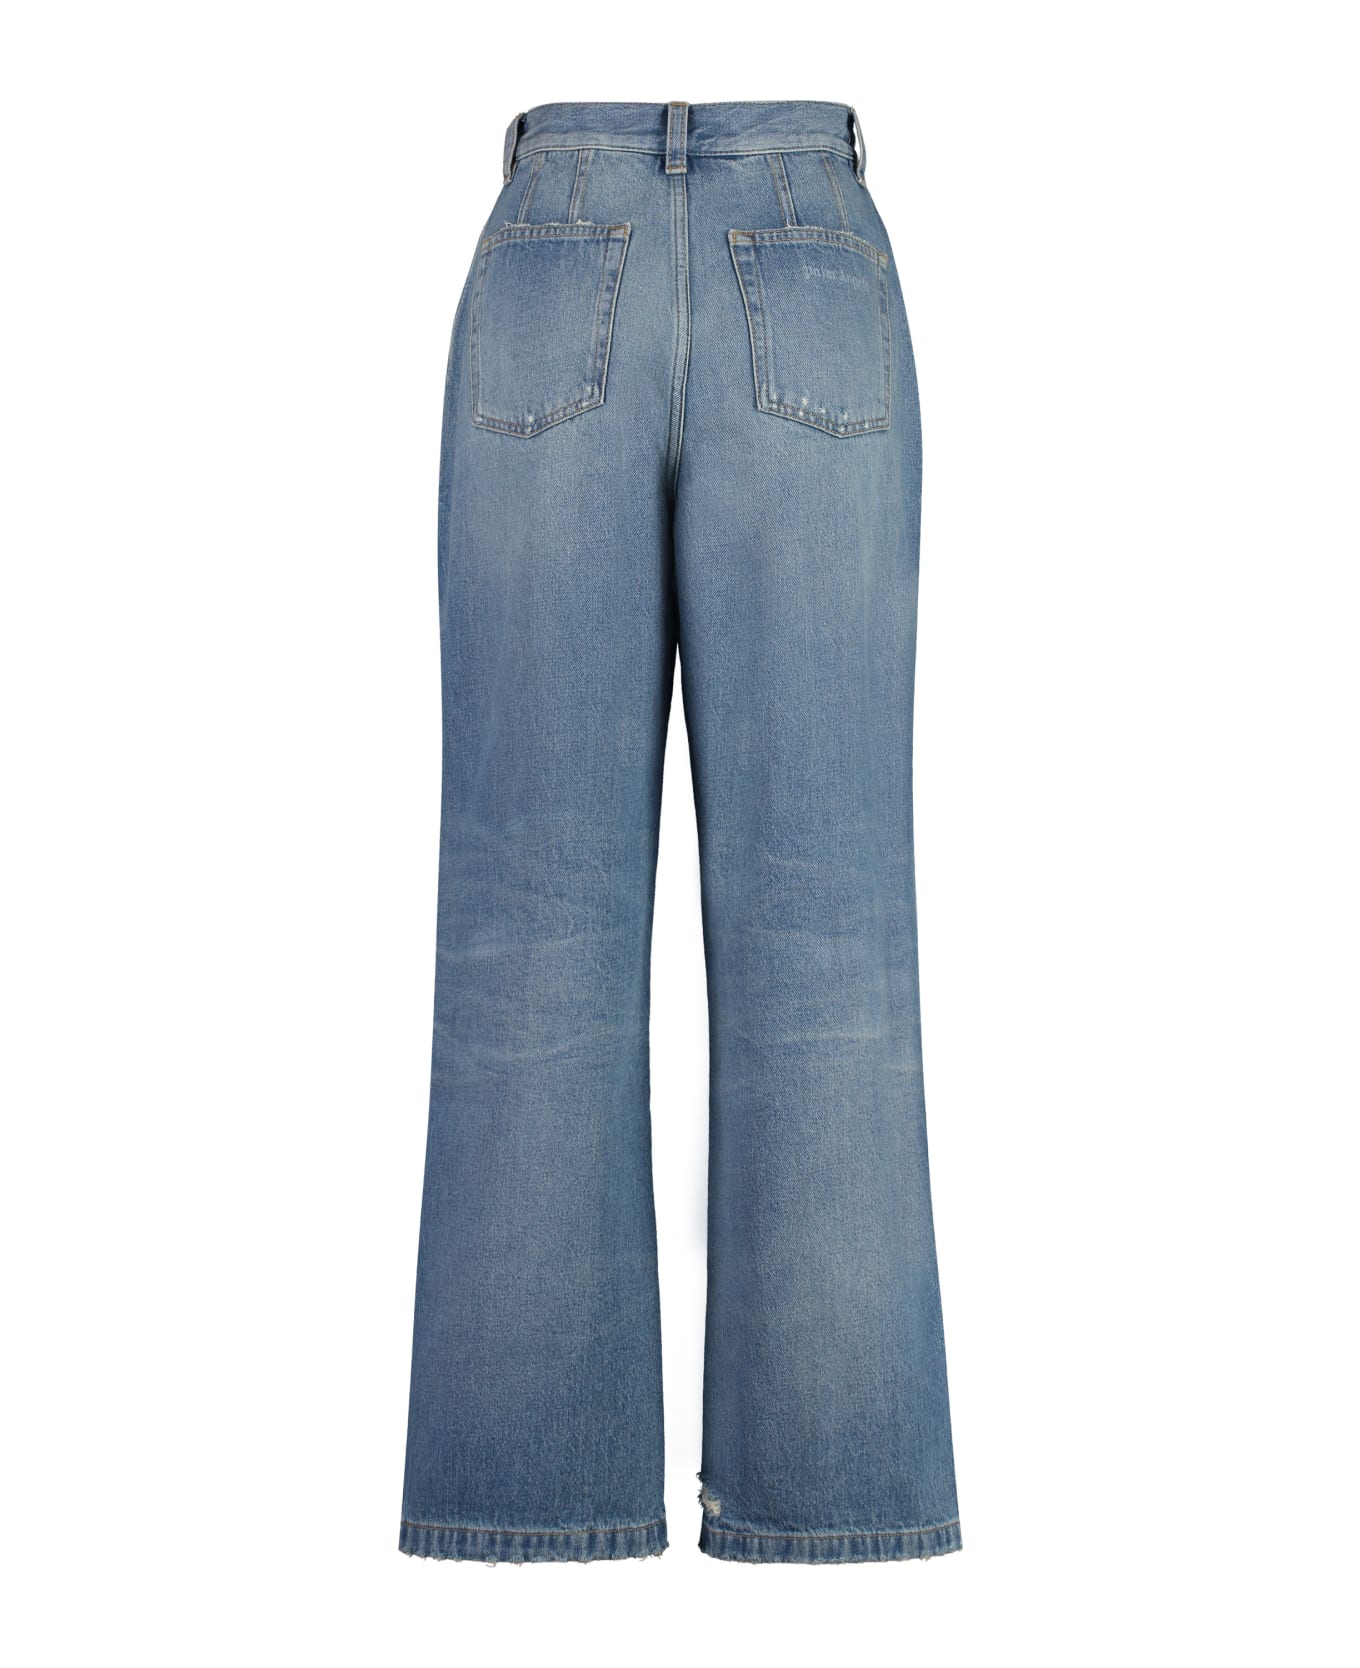 Palm Angels Light Blue Cotton Jeans - Denim